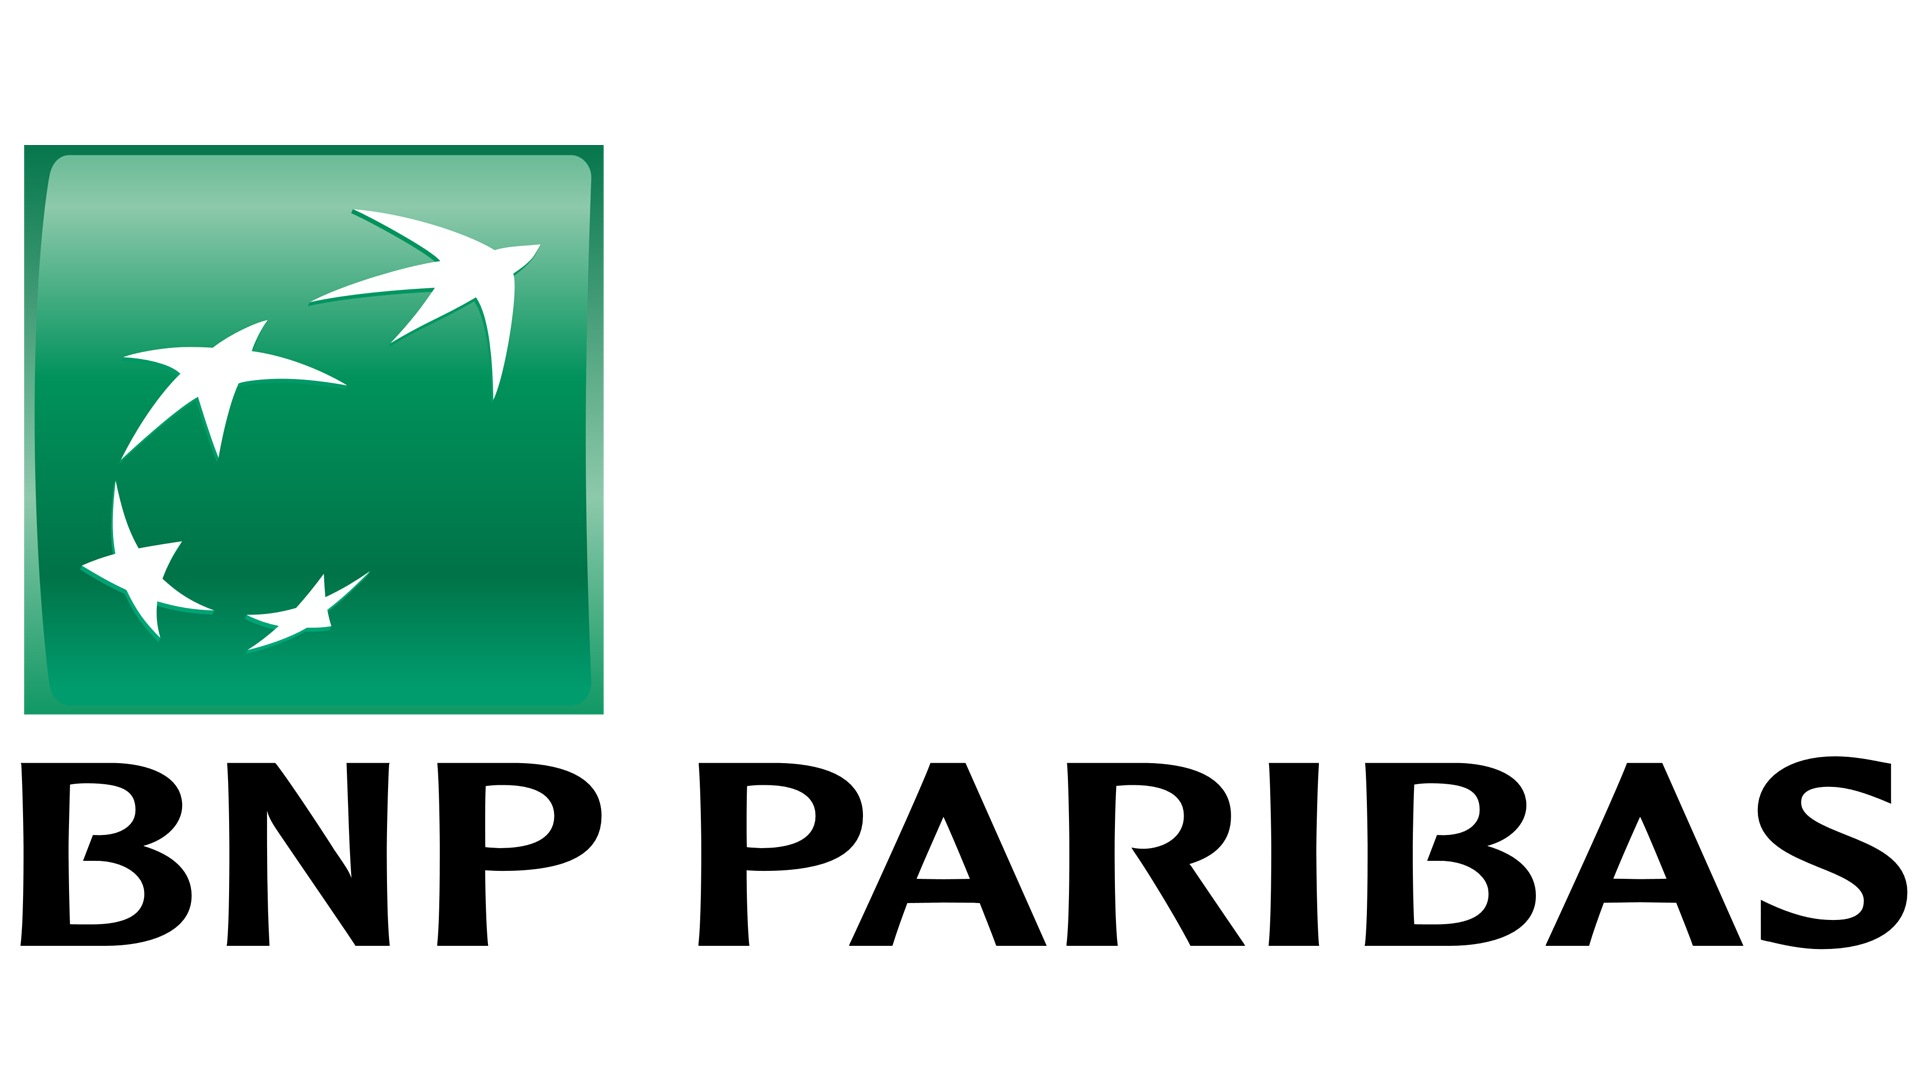 Logo De Bnp Paribas La Historia Y El Significado Del Logotipo La Hot